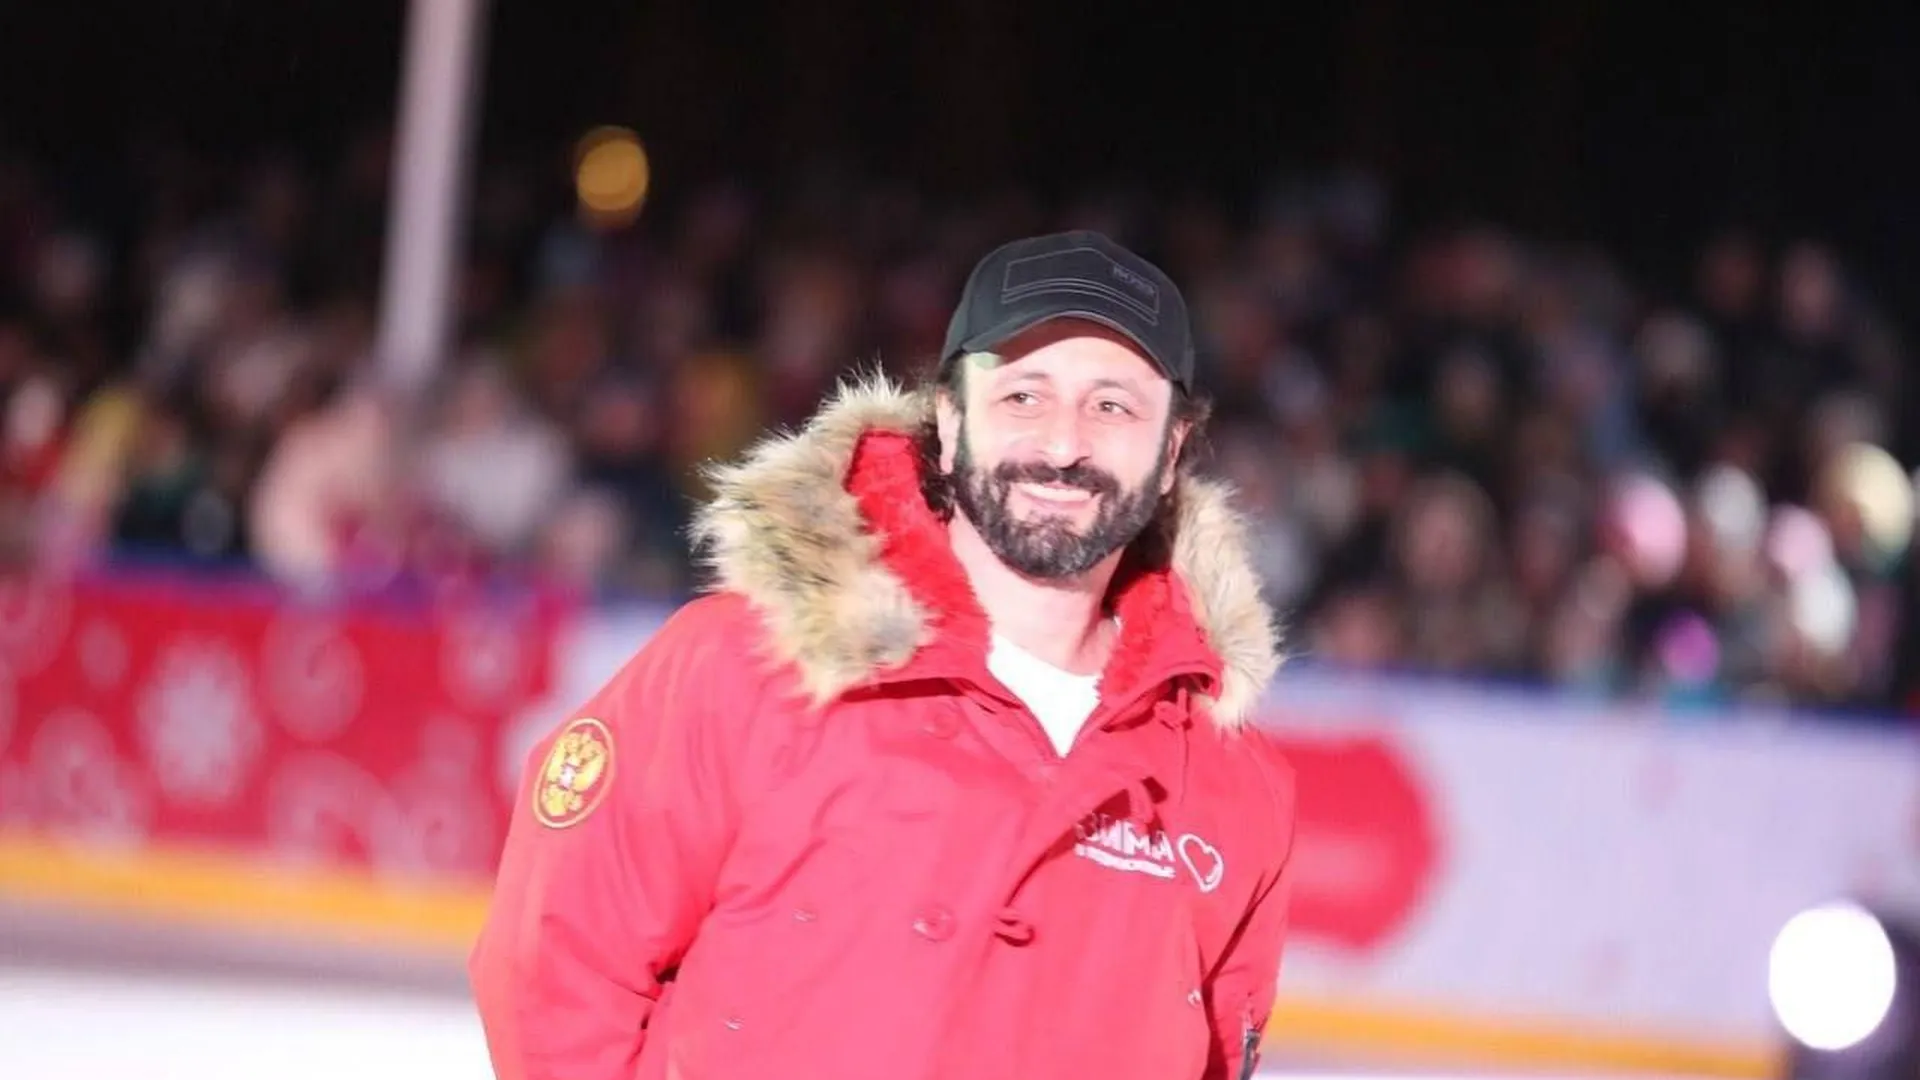 Глава Люберец пригласил местных жителей на ледовое шоу Ильи Авербуха «Чемпионы»